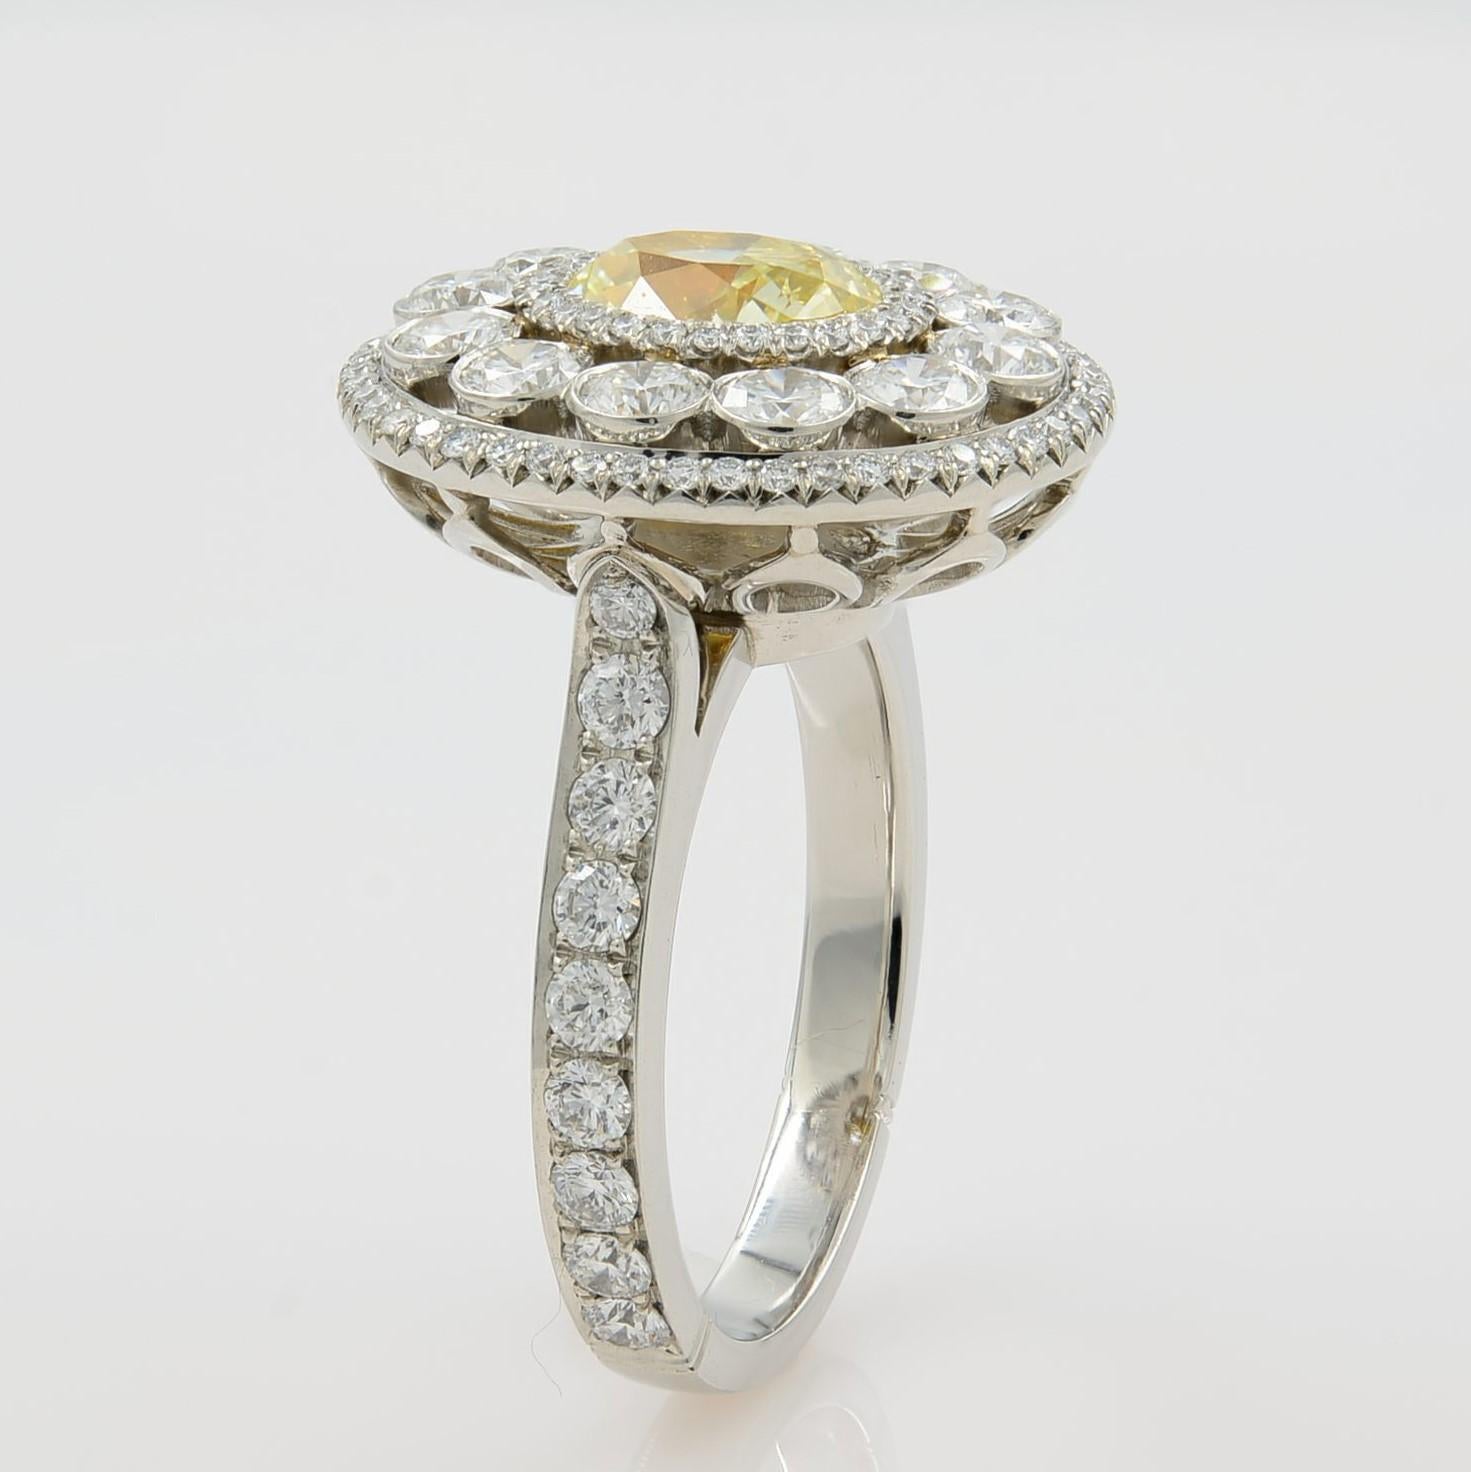 Dieses schöne Stück zeigt einen einkarätigen hellgelben Diamanten, der von drei Reihen runder Brillanten umgeben ist, die abwechselnd in jeder Reihe mit Pflastersteinen und in der Lünette gefasst sind. In einer hellen, gepflasterten